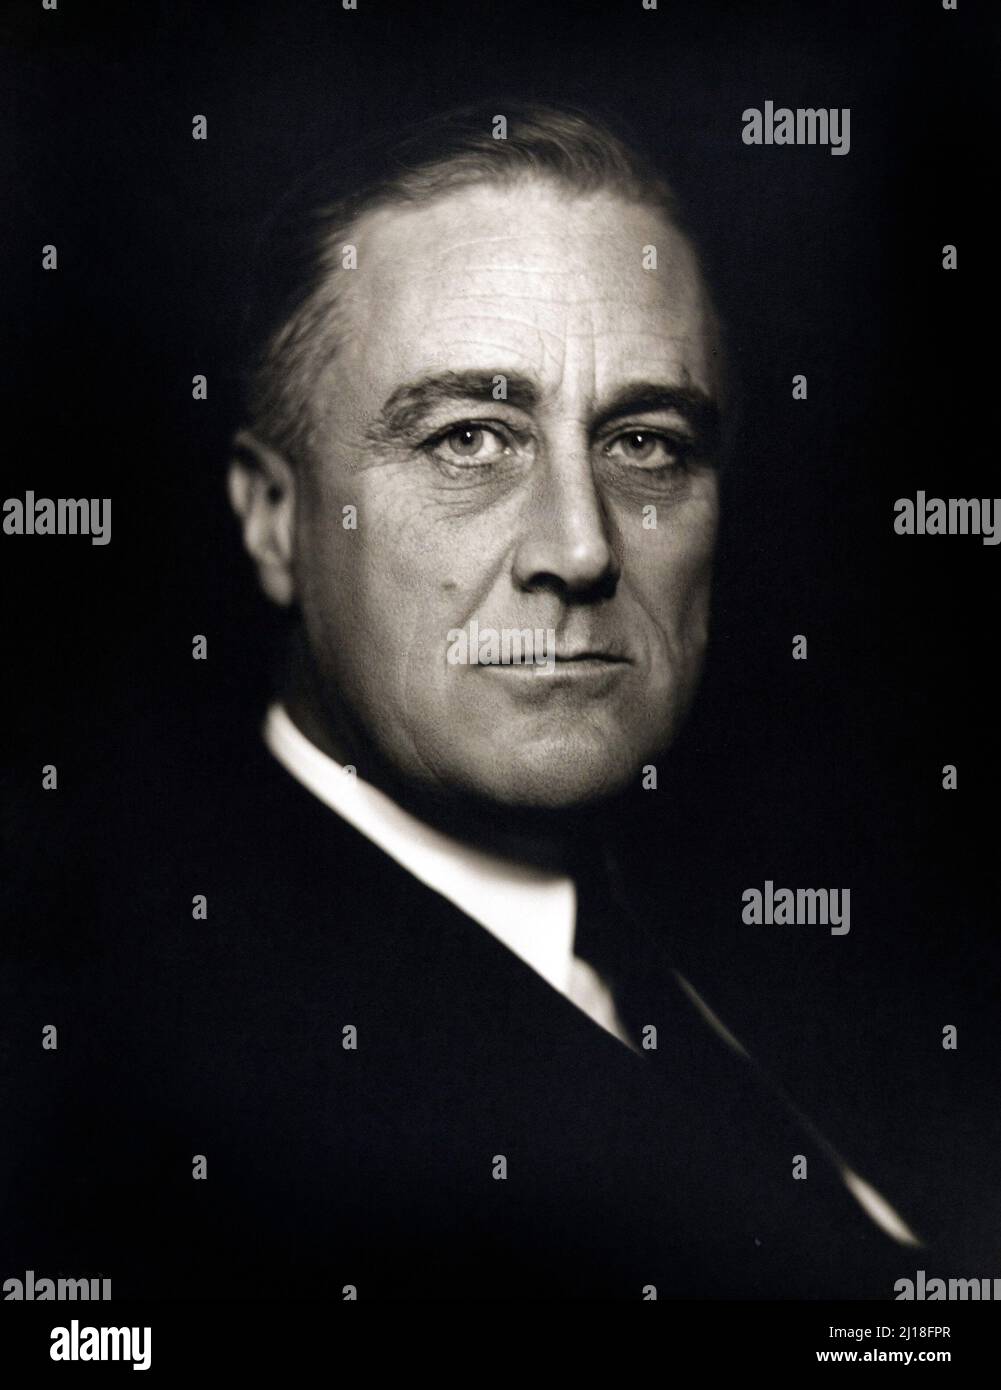 Ritratto di Franklin D Roosevelt (1882-1945), il 32nd Presidente degli Stati Uniti, di Vincenzo Laviosa, c.. 1932 Foto Stock